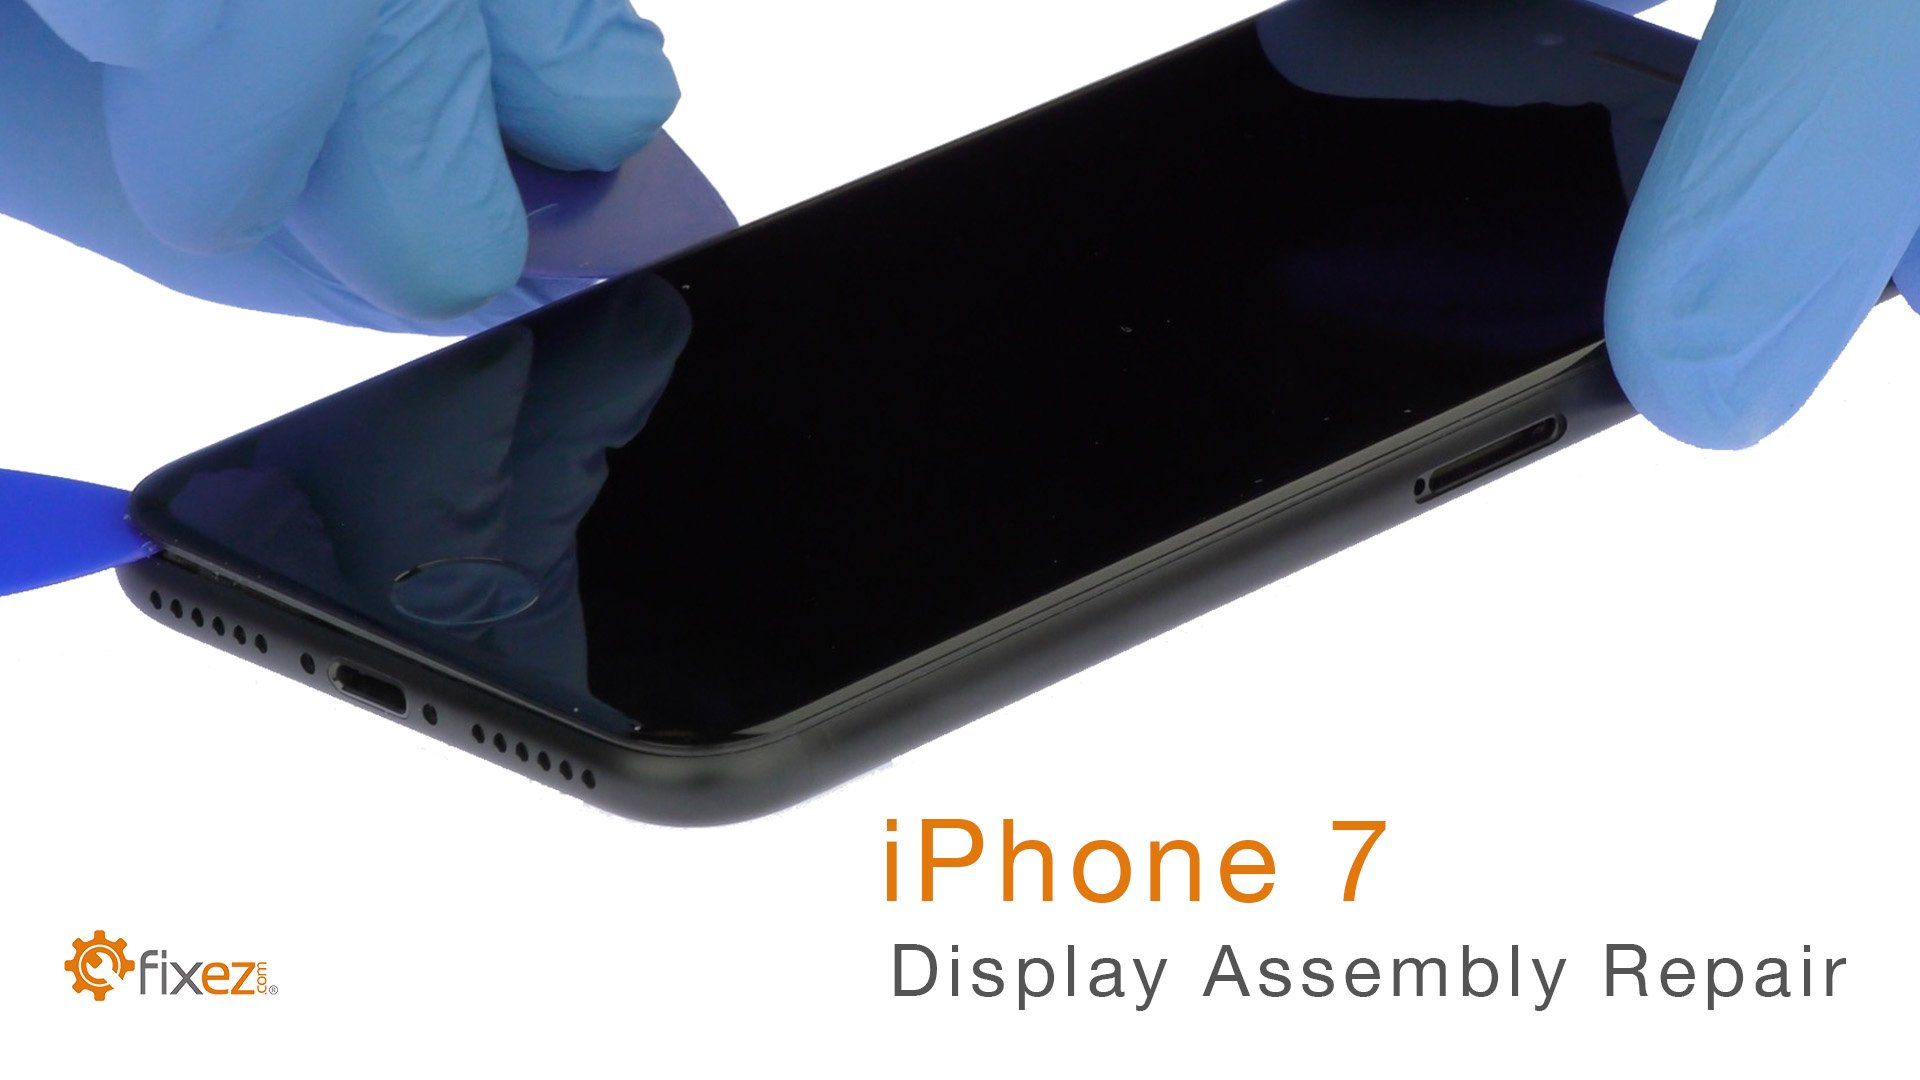 iPhone 7 Display Assembly Repair